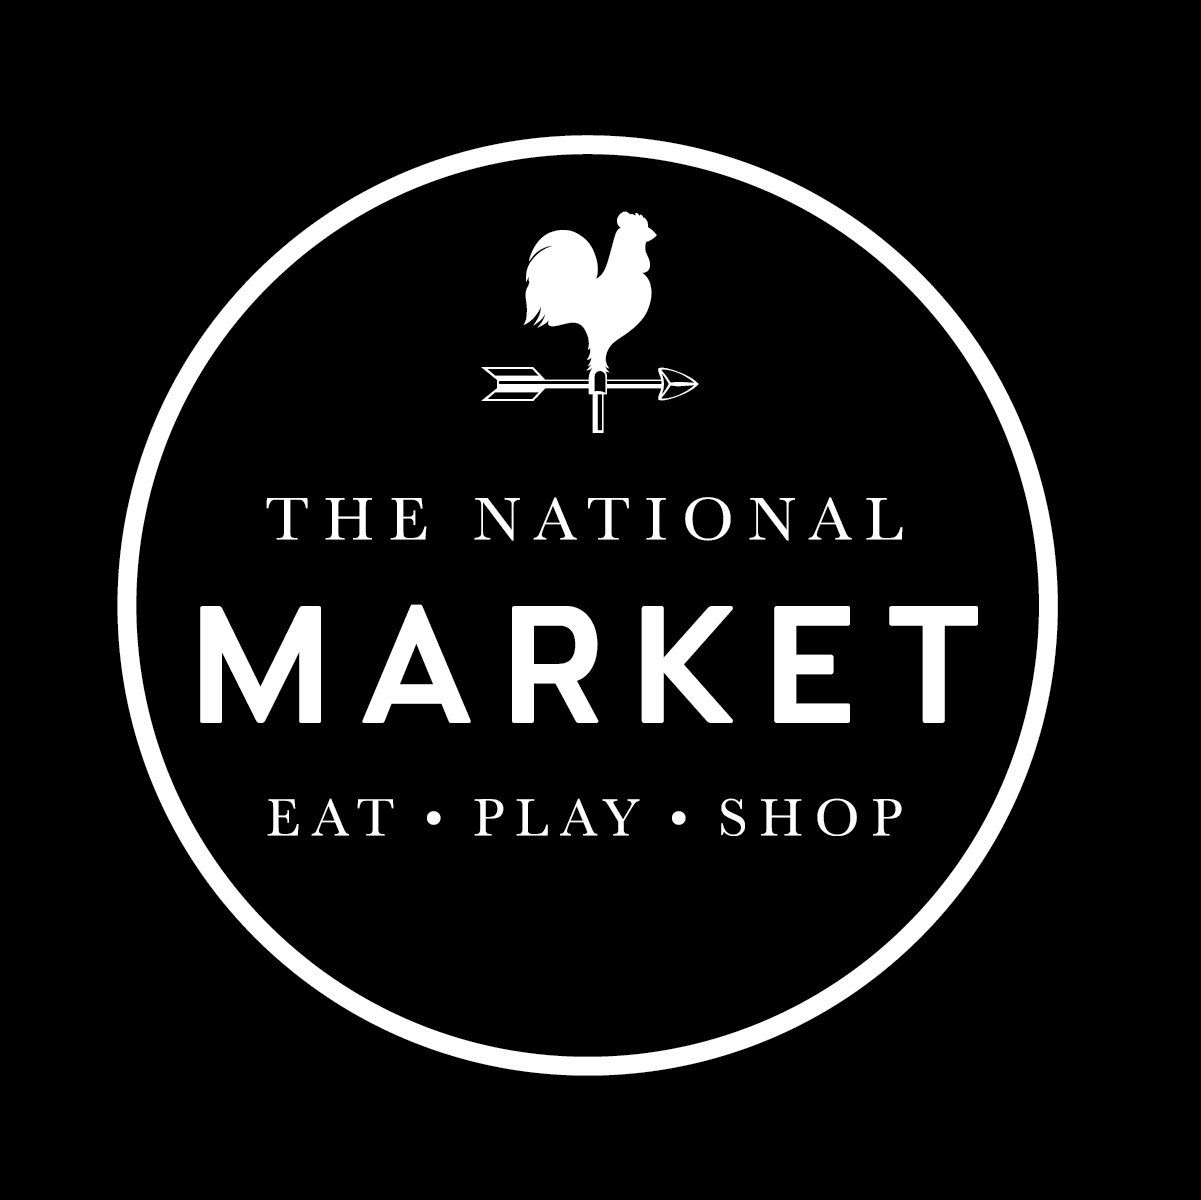 Company logo of The National Flea Market